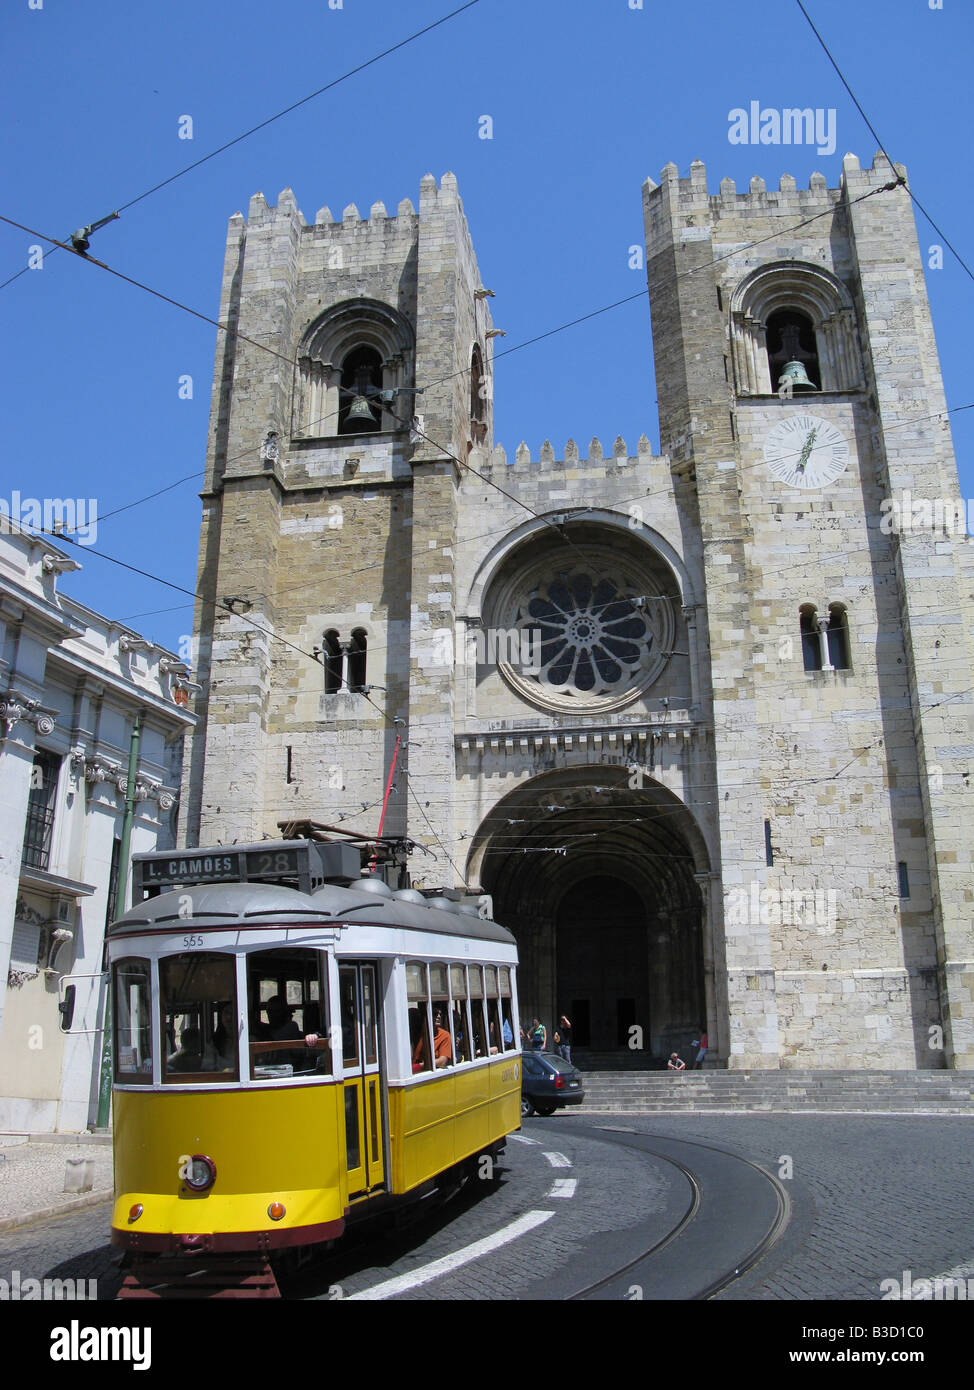 Cattedrale di Lisbona (Sé fare Lisboa) con passaggio di tram giallo. Lisbona, Portogallo, Europa Foto Stock